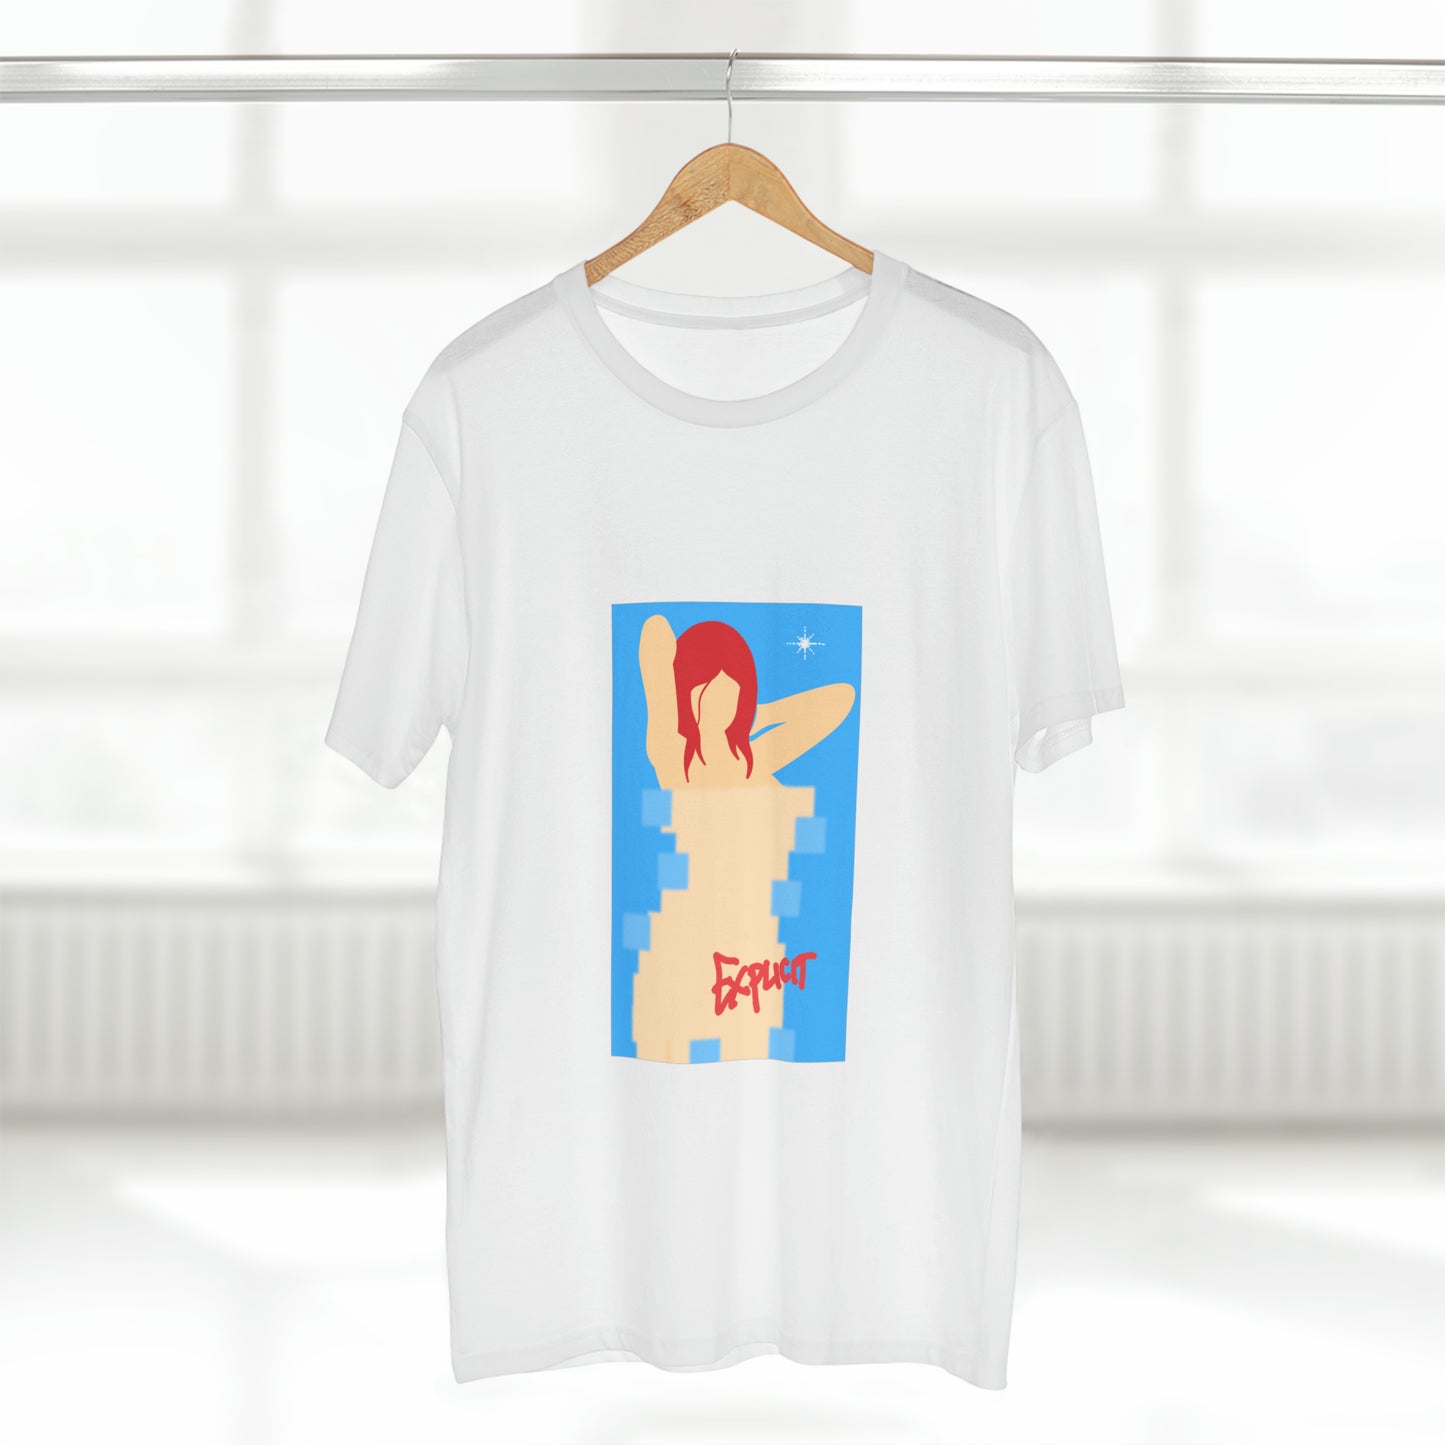 Explicit t-shirt